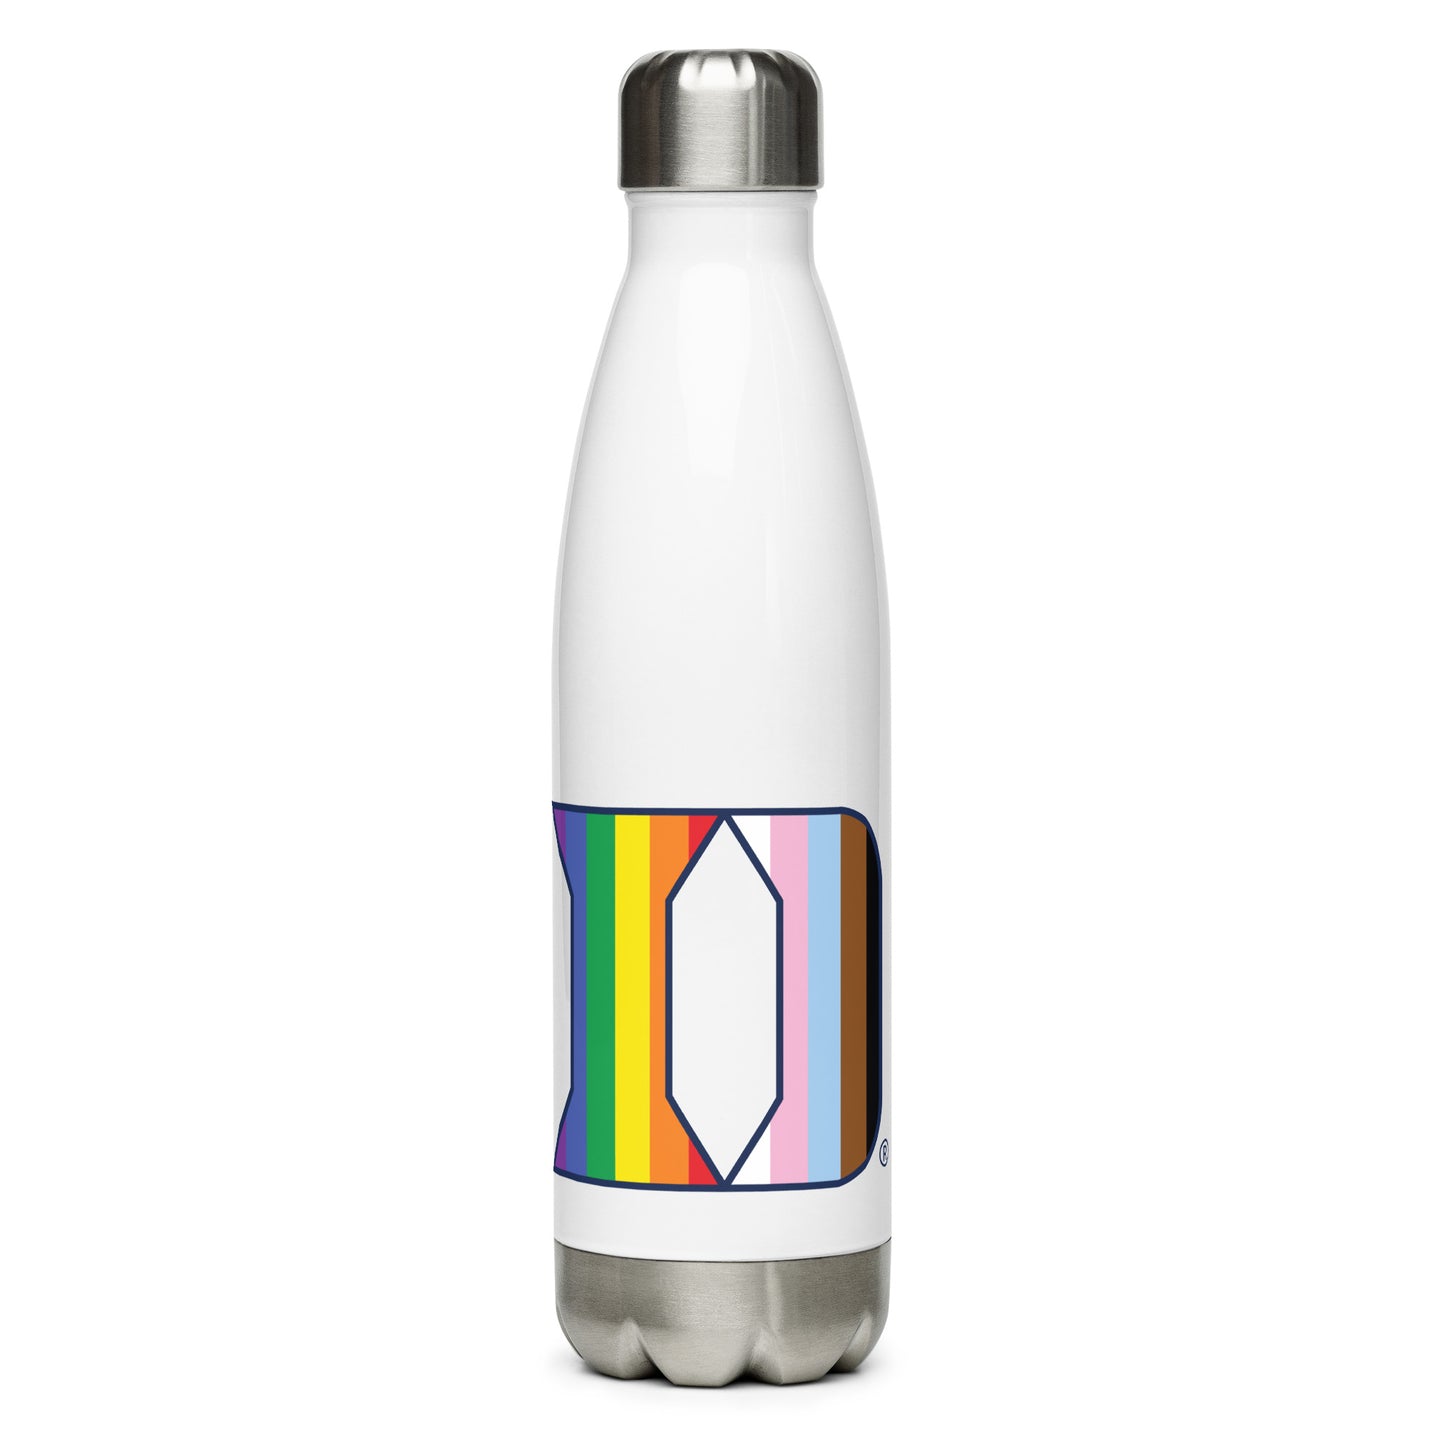 Duke Stainless steel water bottle